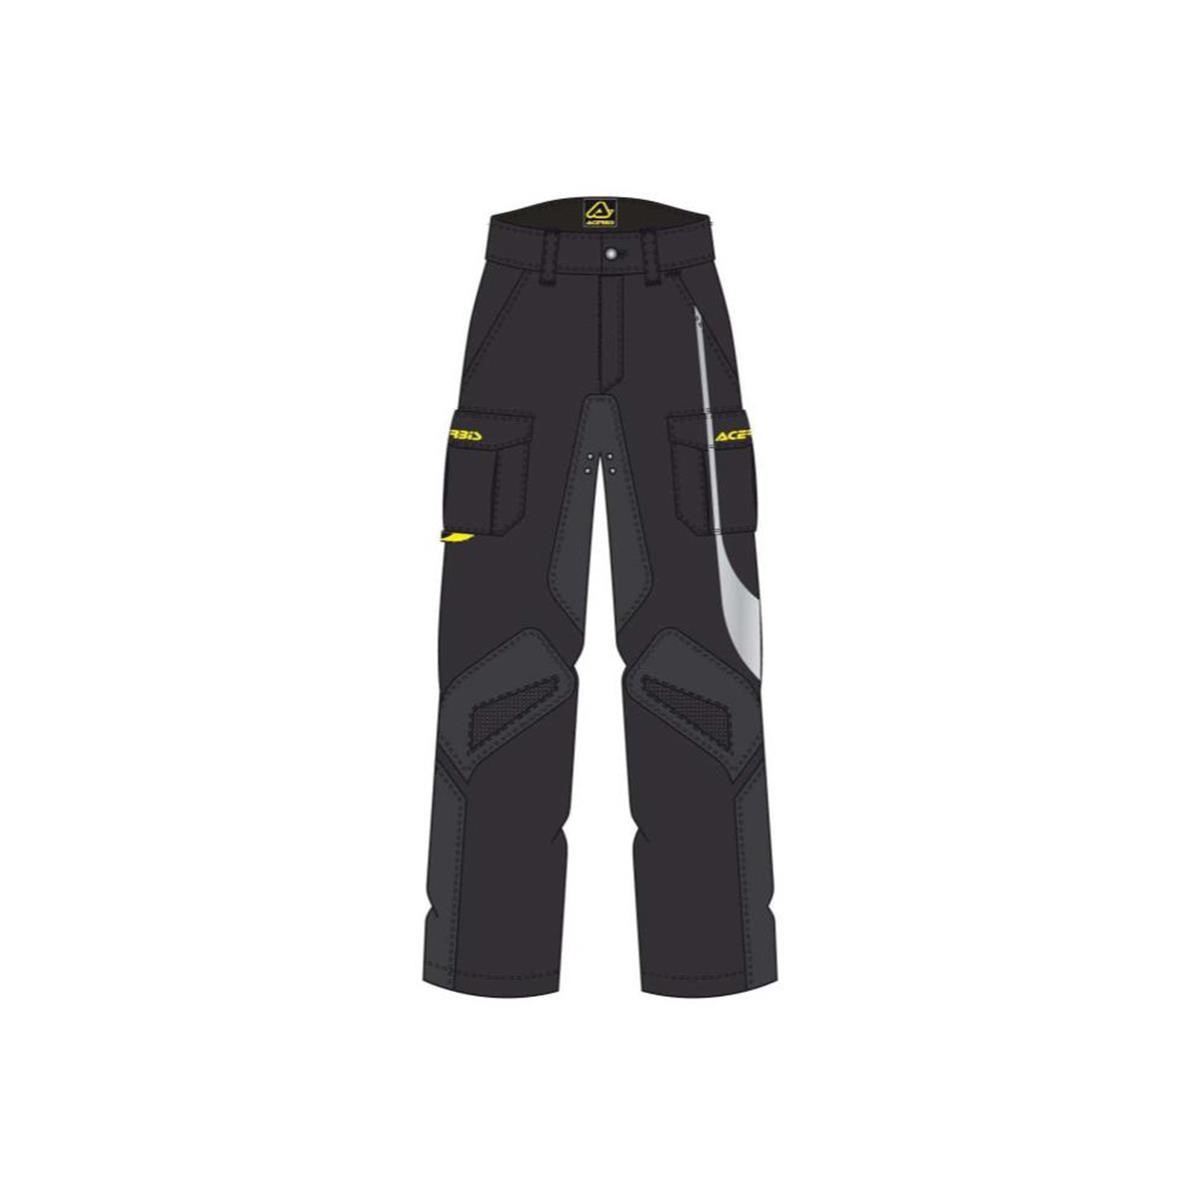 Freizeit/Streetwear Bekleidung-Hosen/Jeans - Acerbis Hose Mechaniker Black